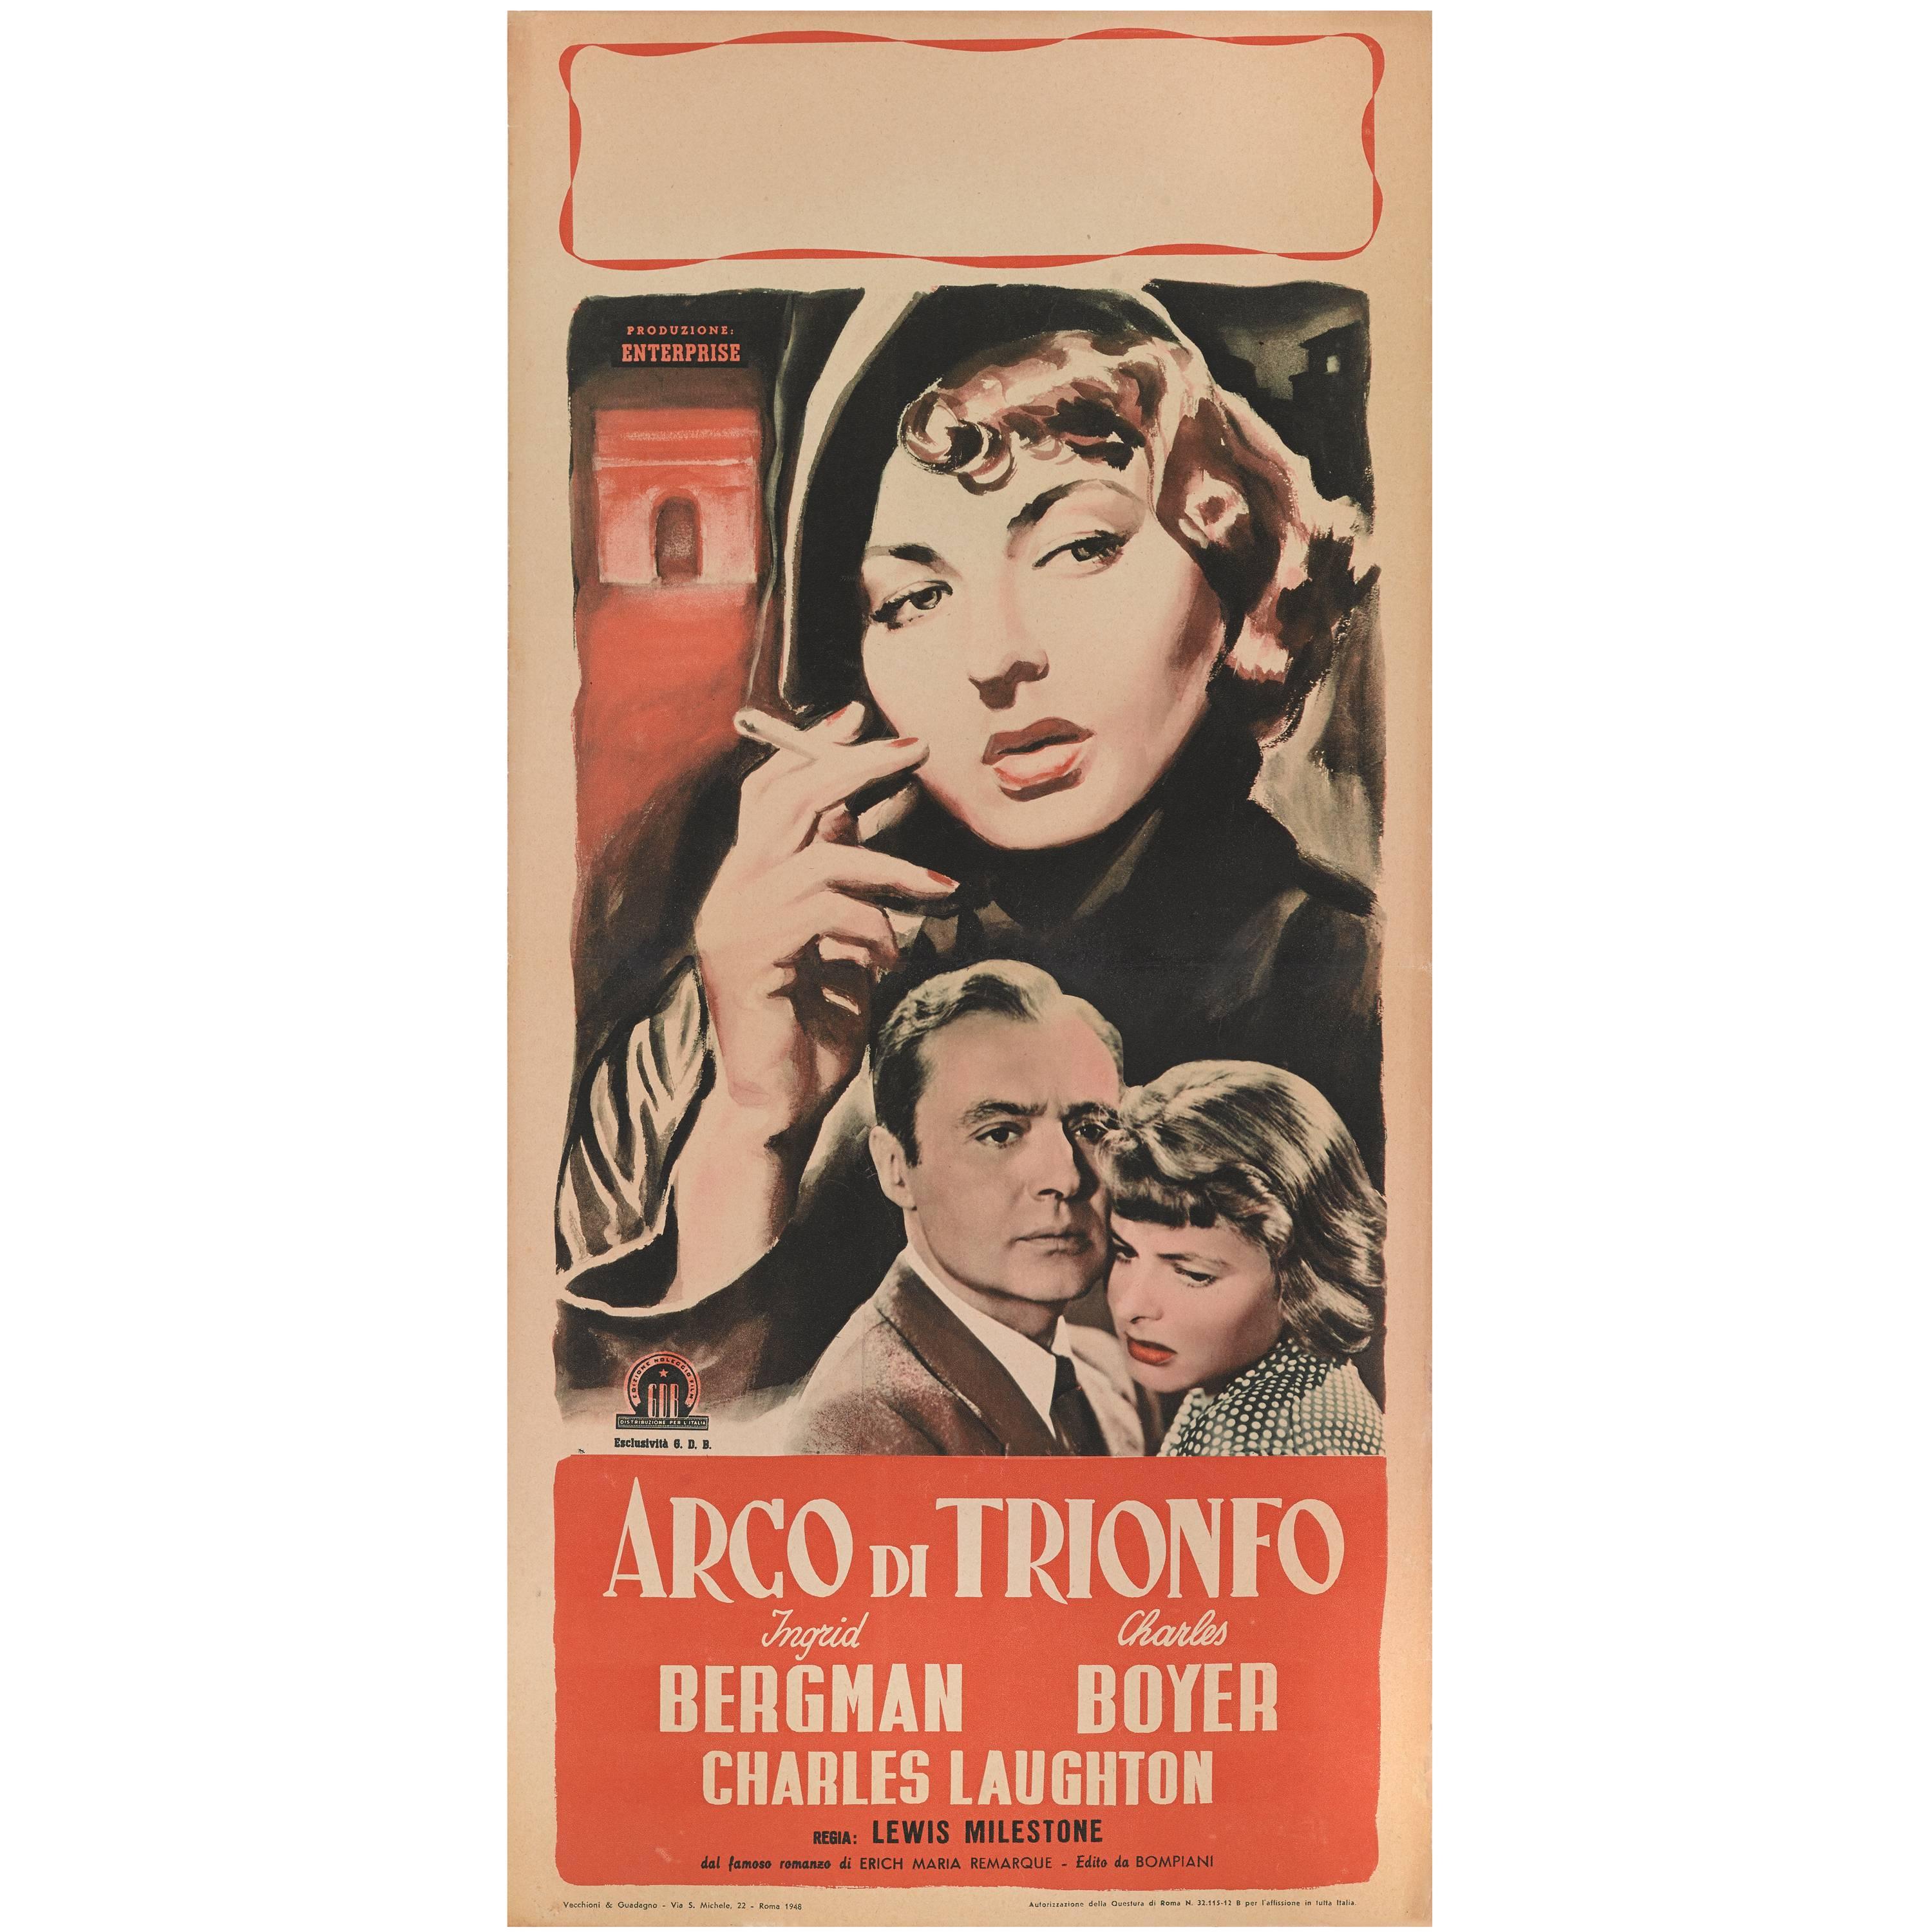 Arch of Triumph / Argo di Trionfo For Sale